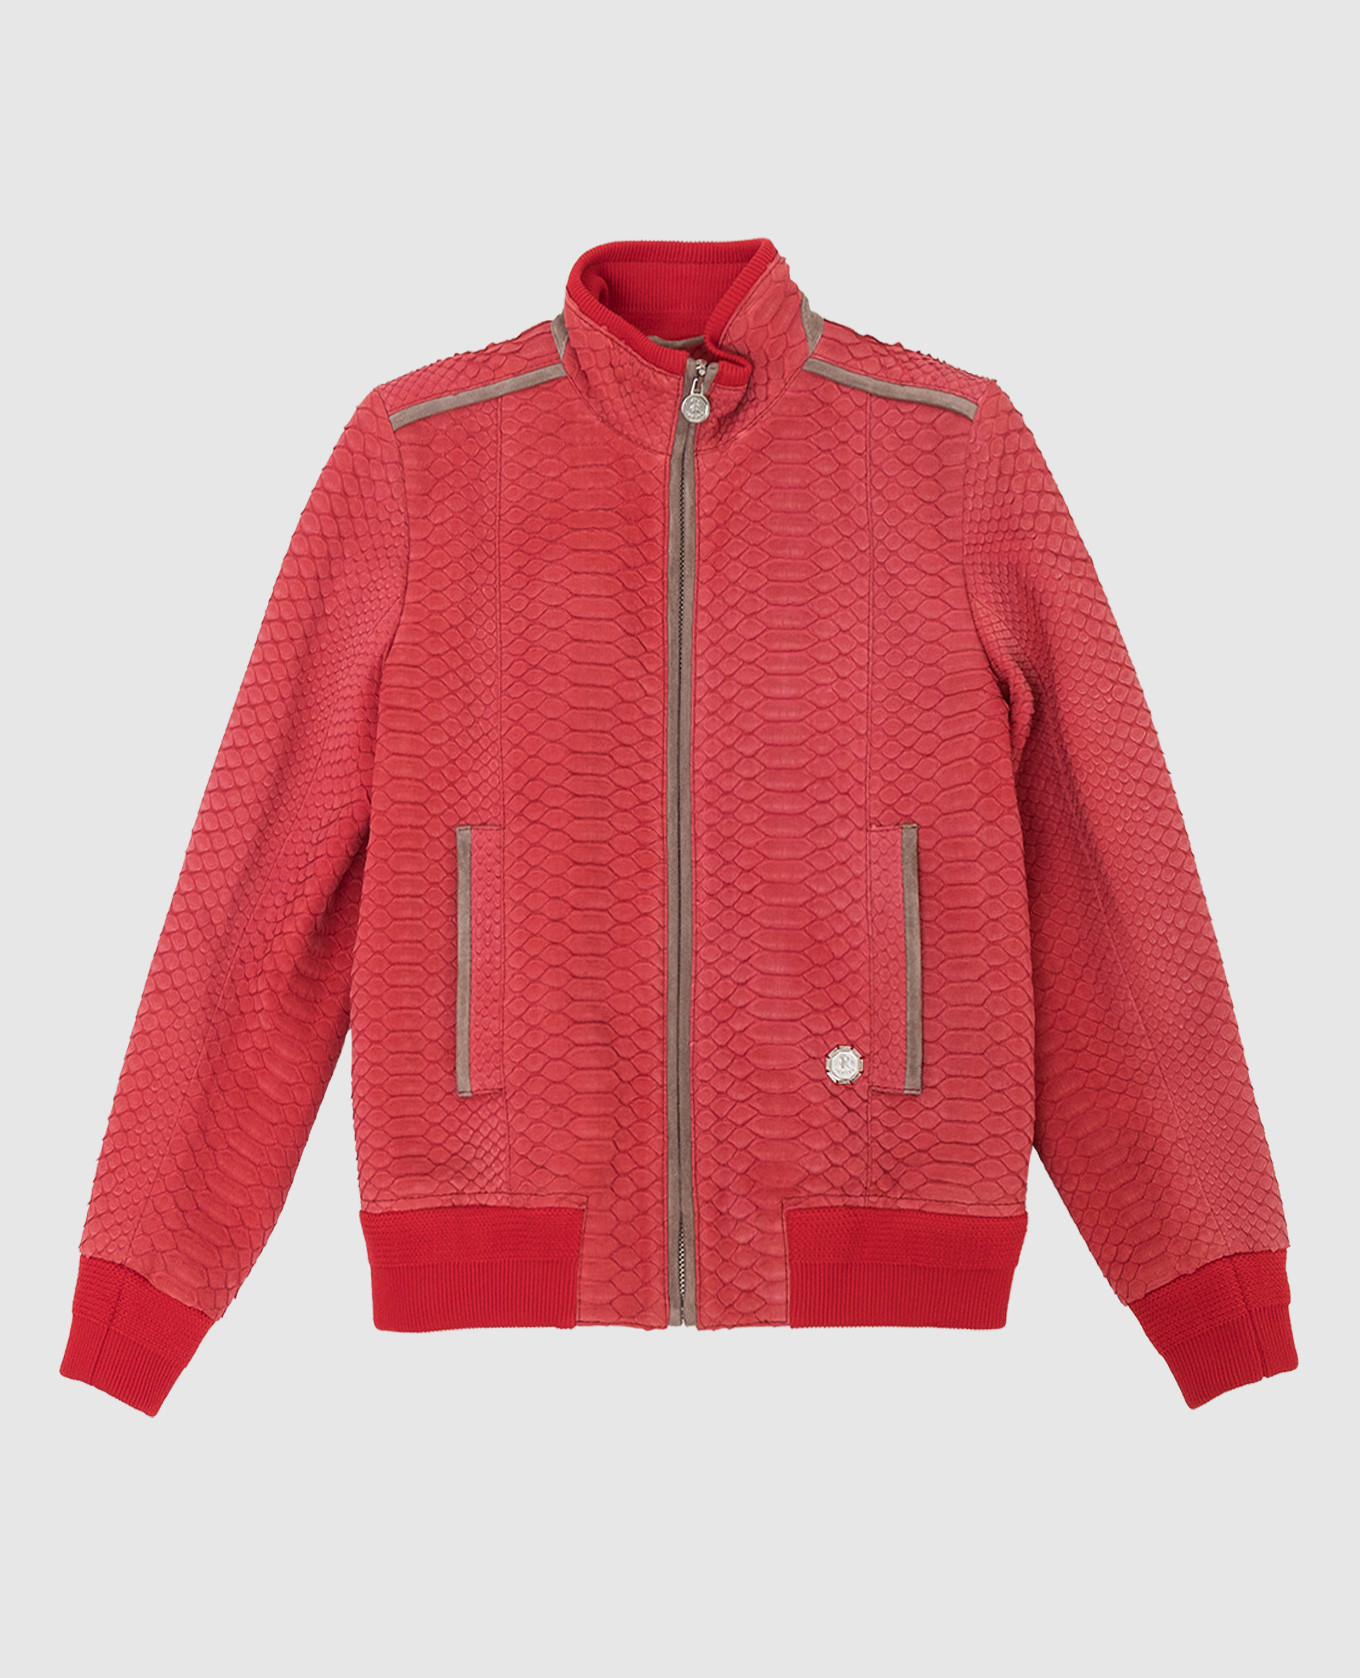 Children's red python skin jacket